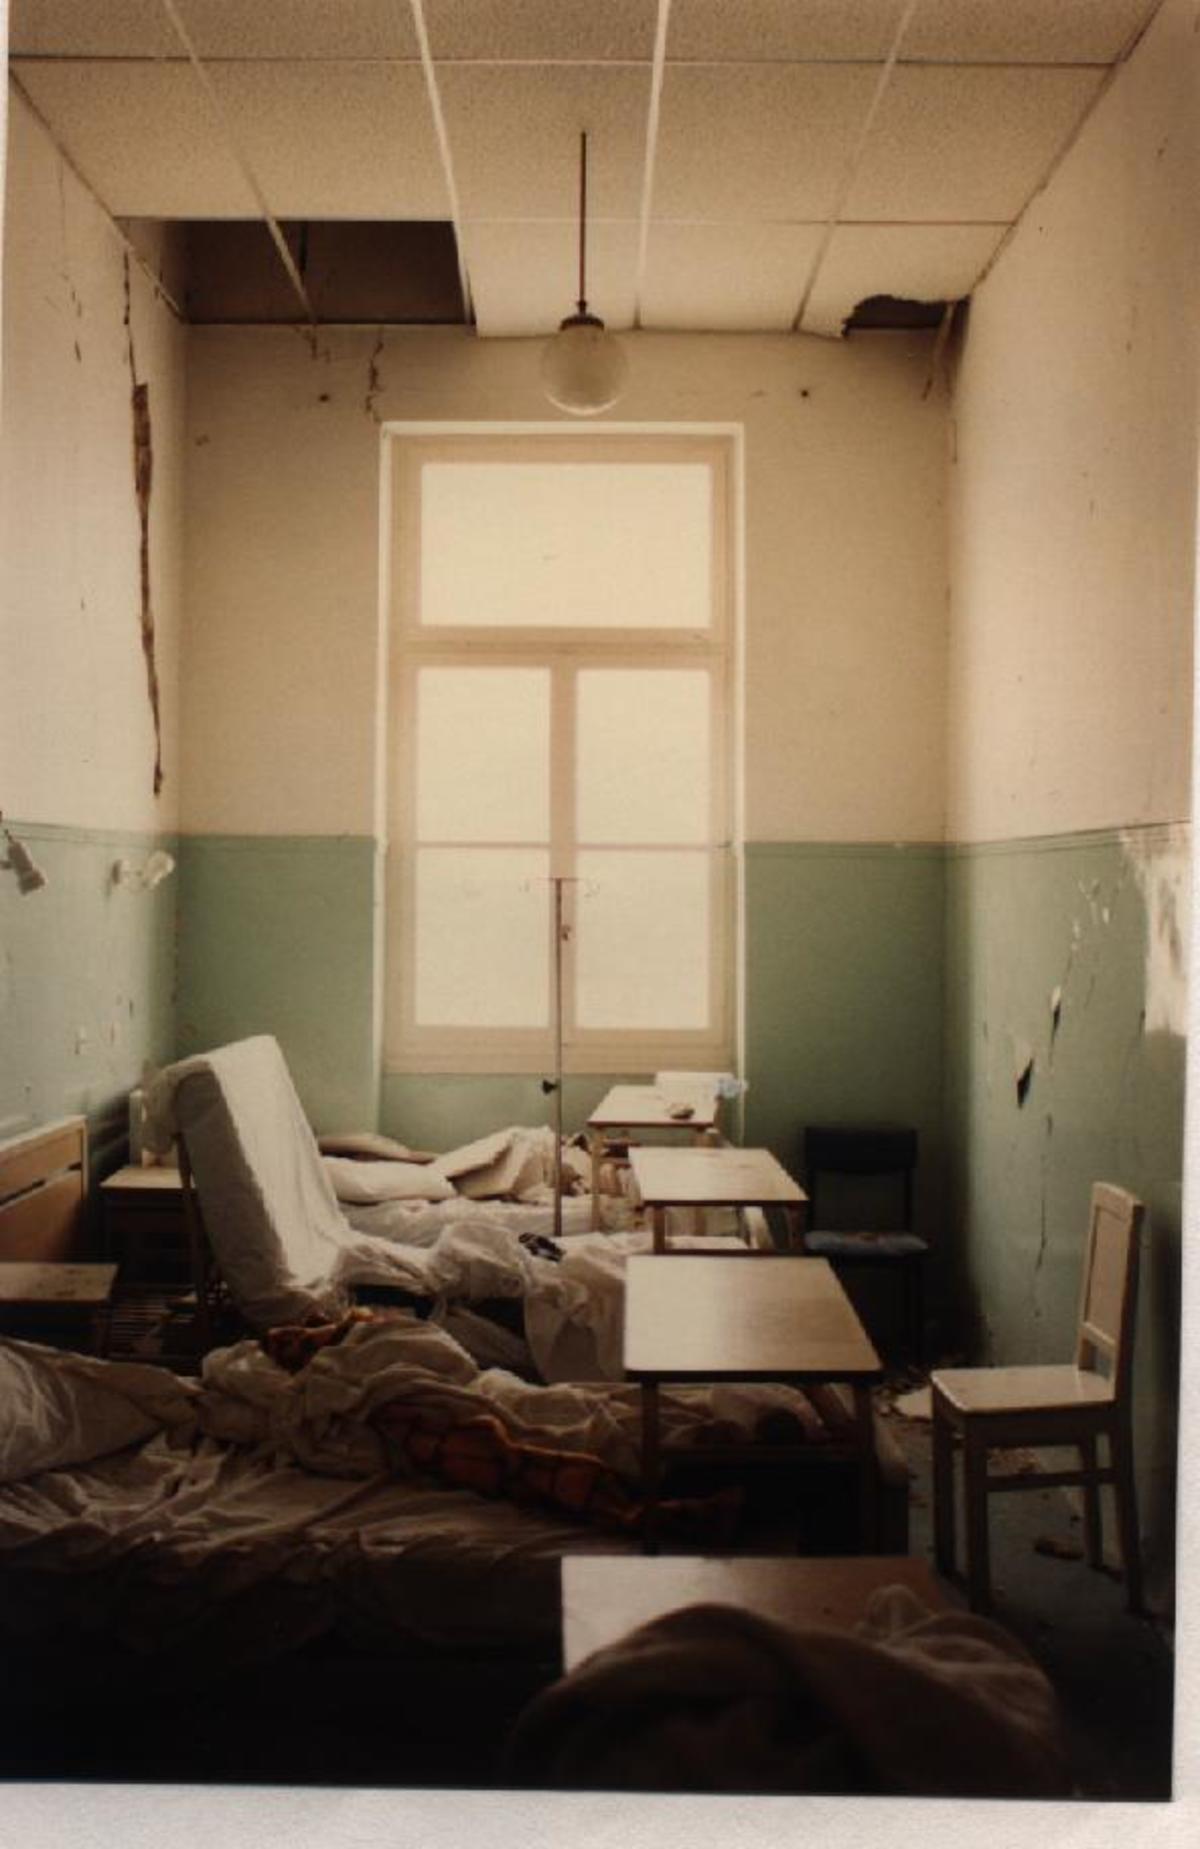 Πτώση ψευδοροφών πάνω σε κλίνες ασθενών σε Νοσοκομείο κατά τη διάρκεια σεισμού. Δεν υπάρχει προδιαγραφή για “αντισεισμική στήριξη ψευδοροφών”.